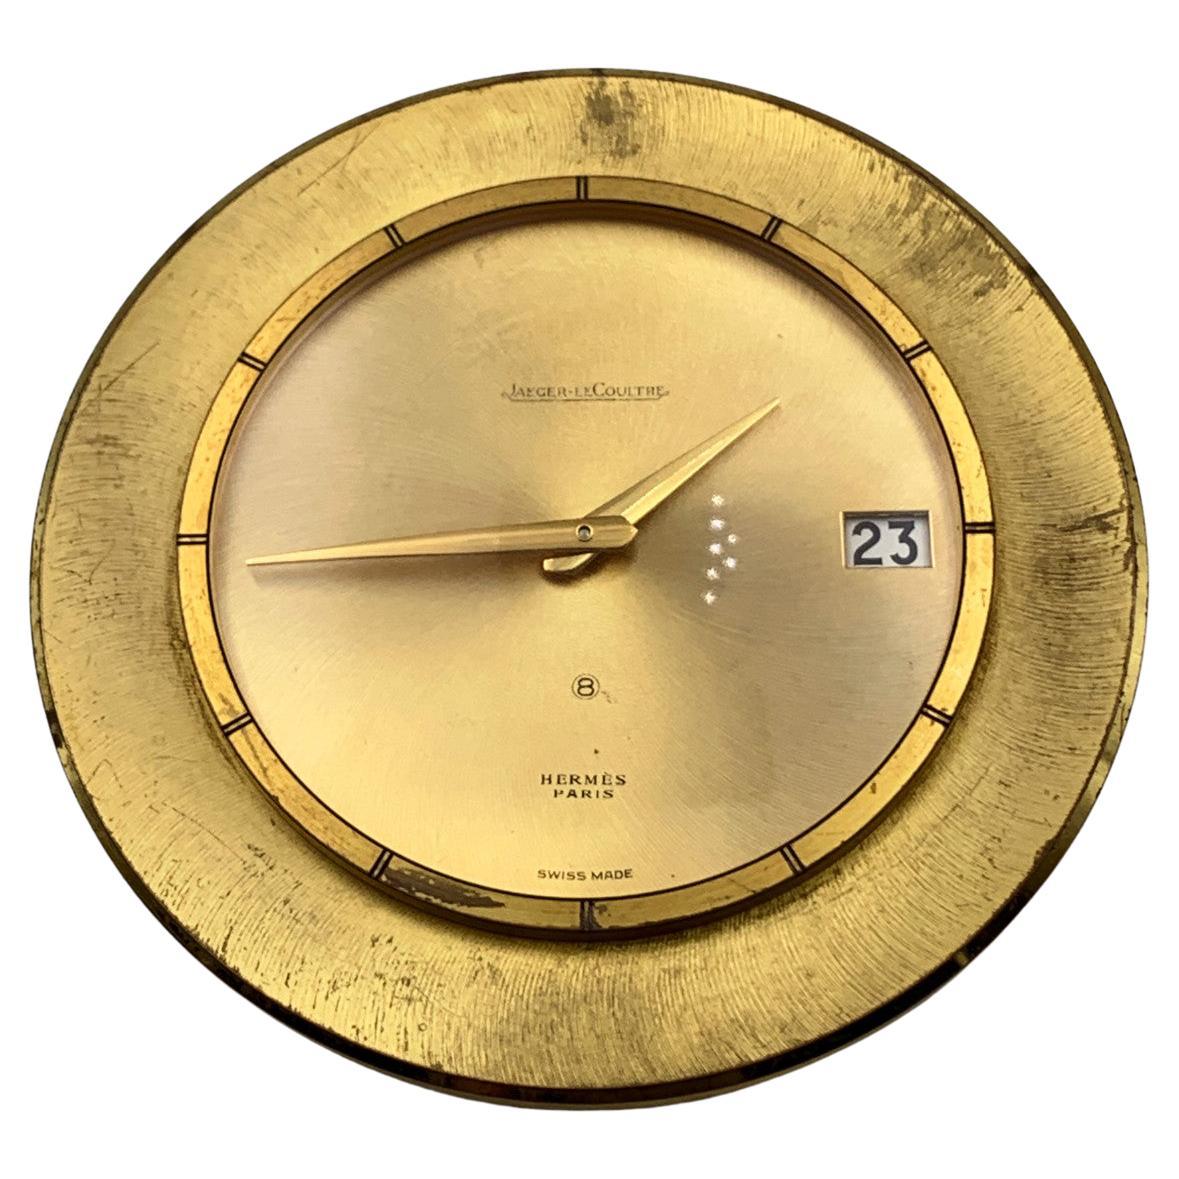 Jaeger LeCoutre for Hermes Vintage Round Gold Metal Desk Clock